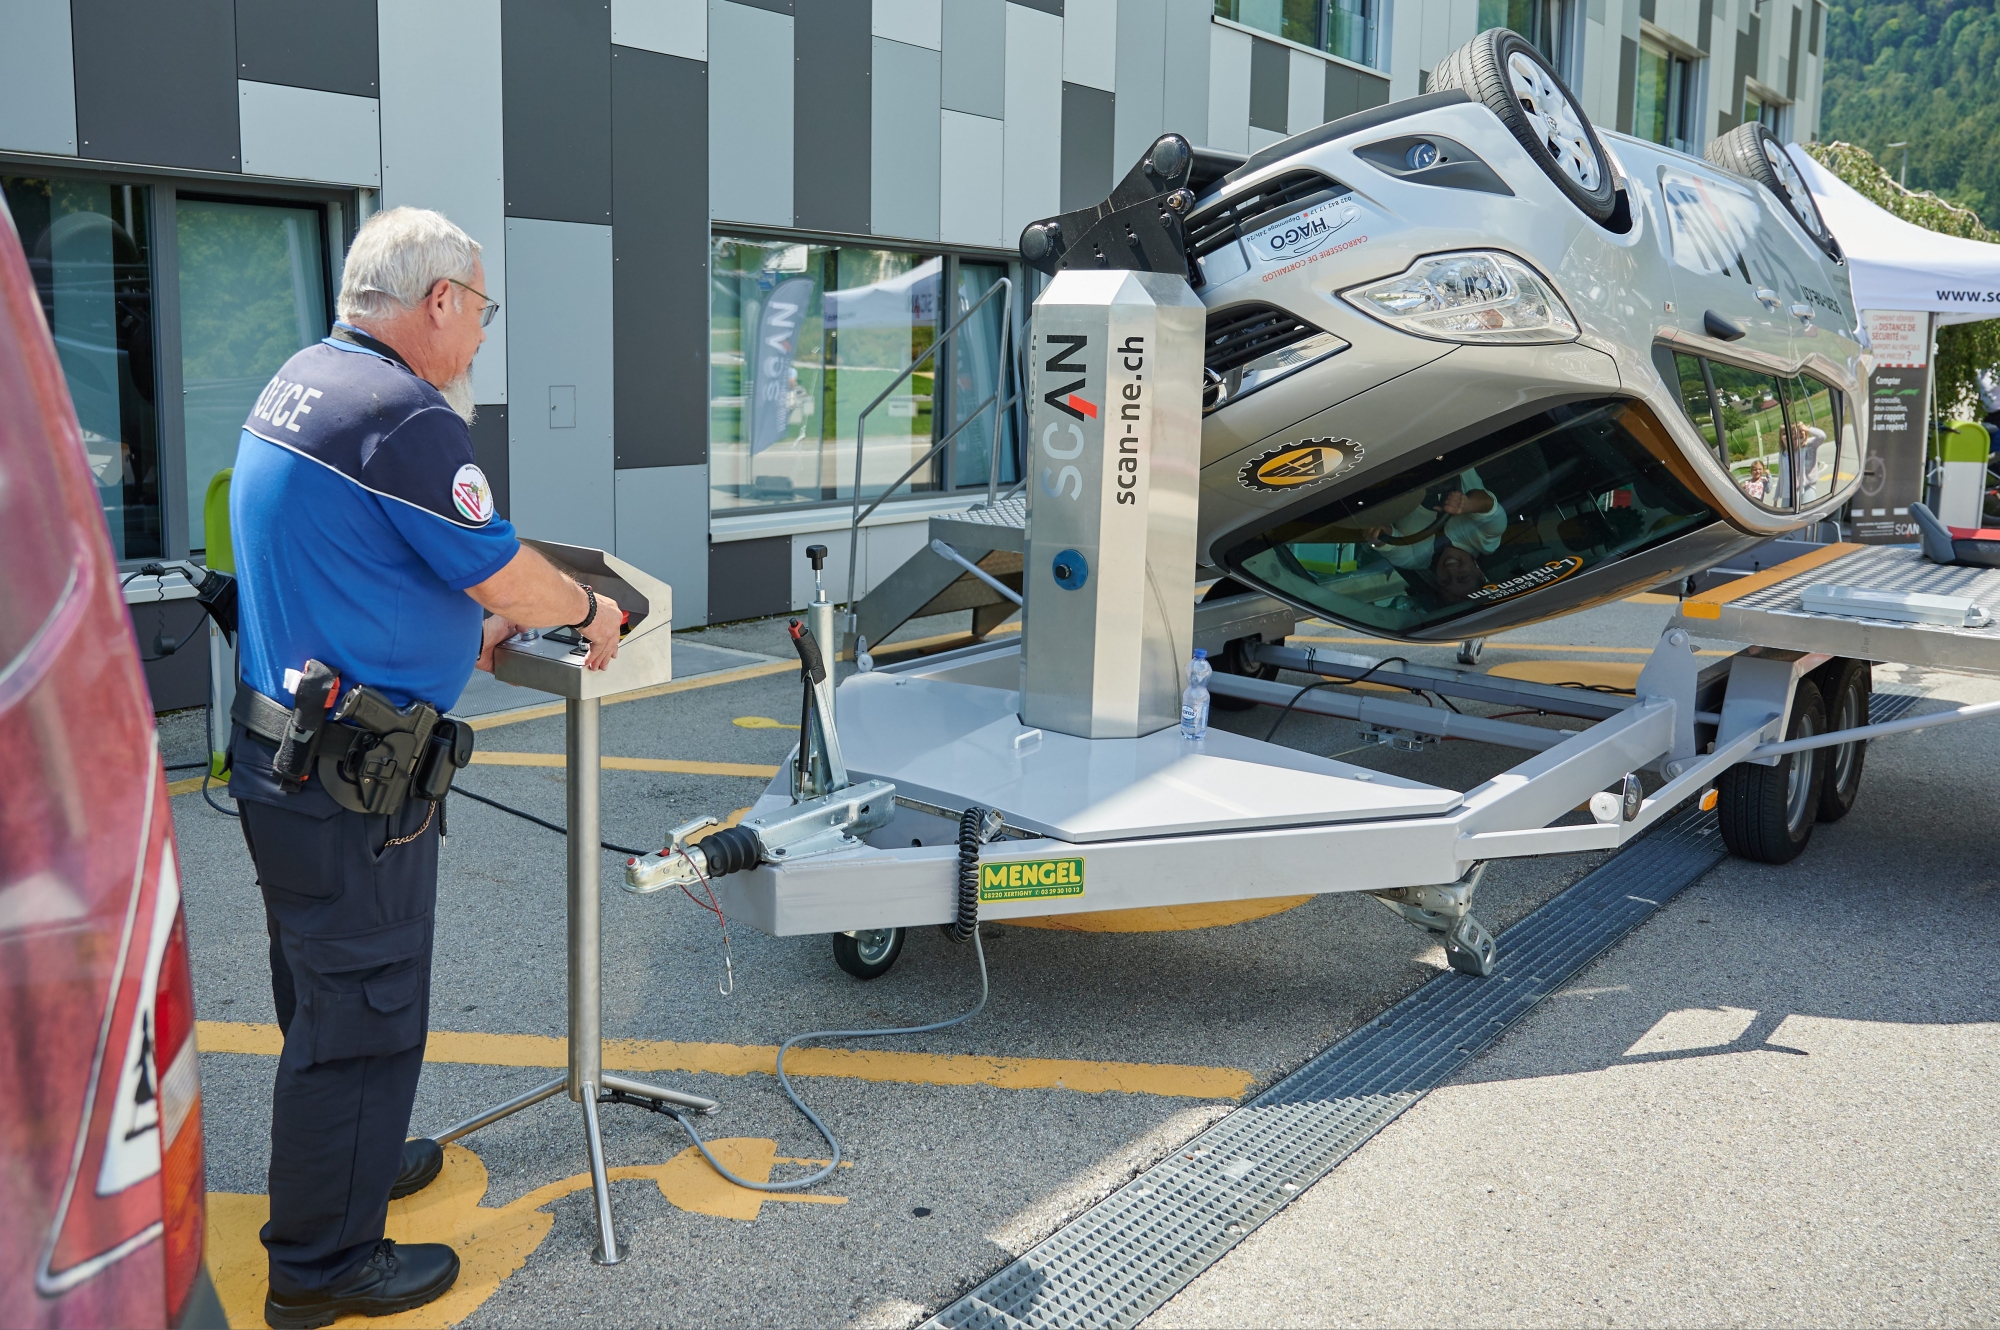 Le simulateur de tonneaux fait vivre un accident de voiture en toute sécurité et démontre avant tout l'efficacité de la ceinture de sécurité.